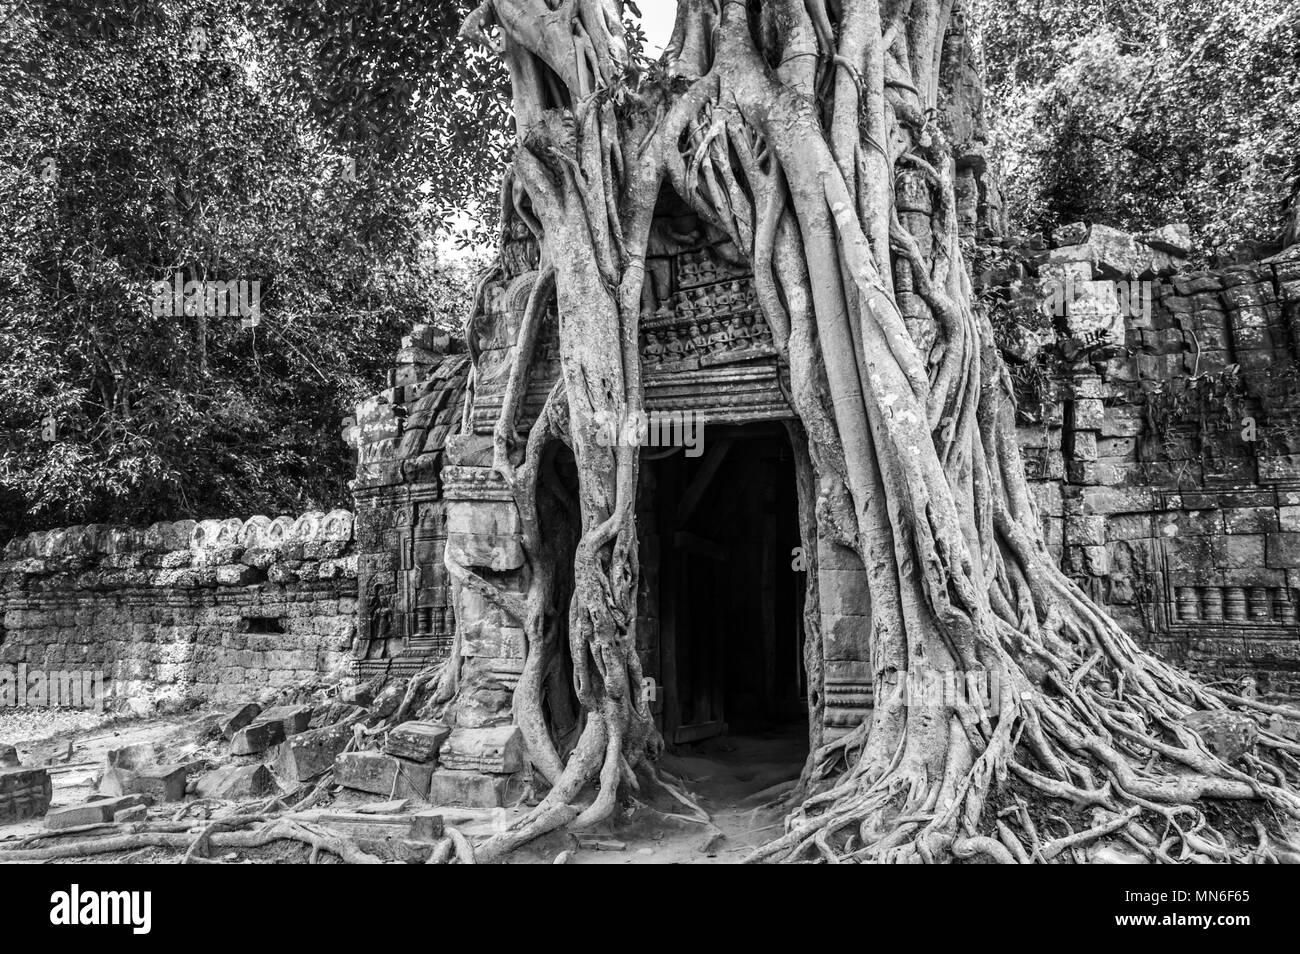 Radici di un banyan tree al Ta Prohm tempio di Angkor, Siem Rep, Cambogia Foto Stock